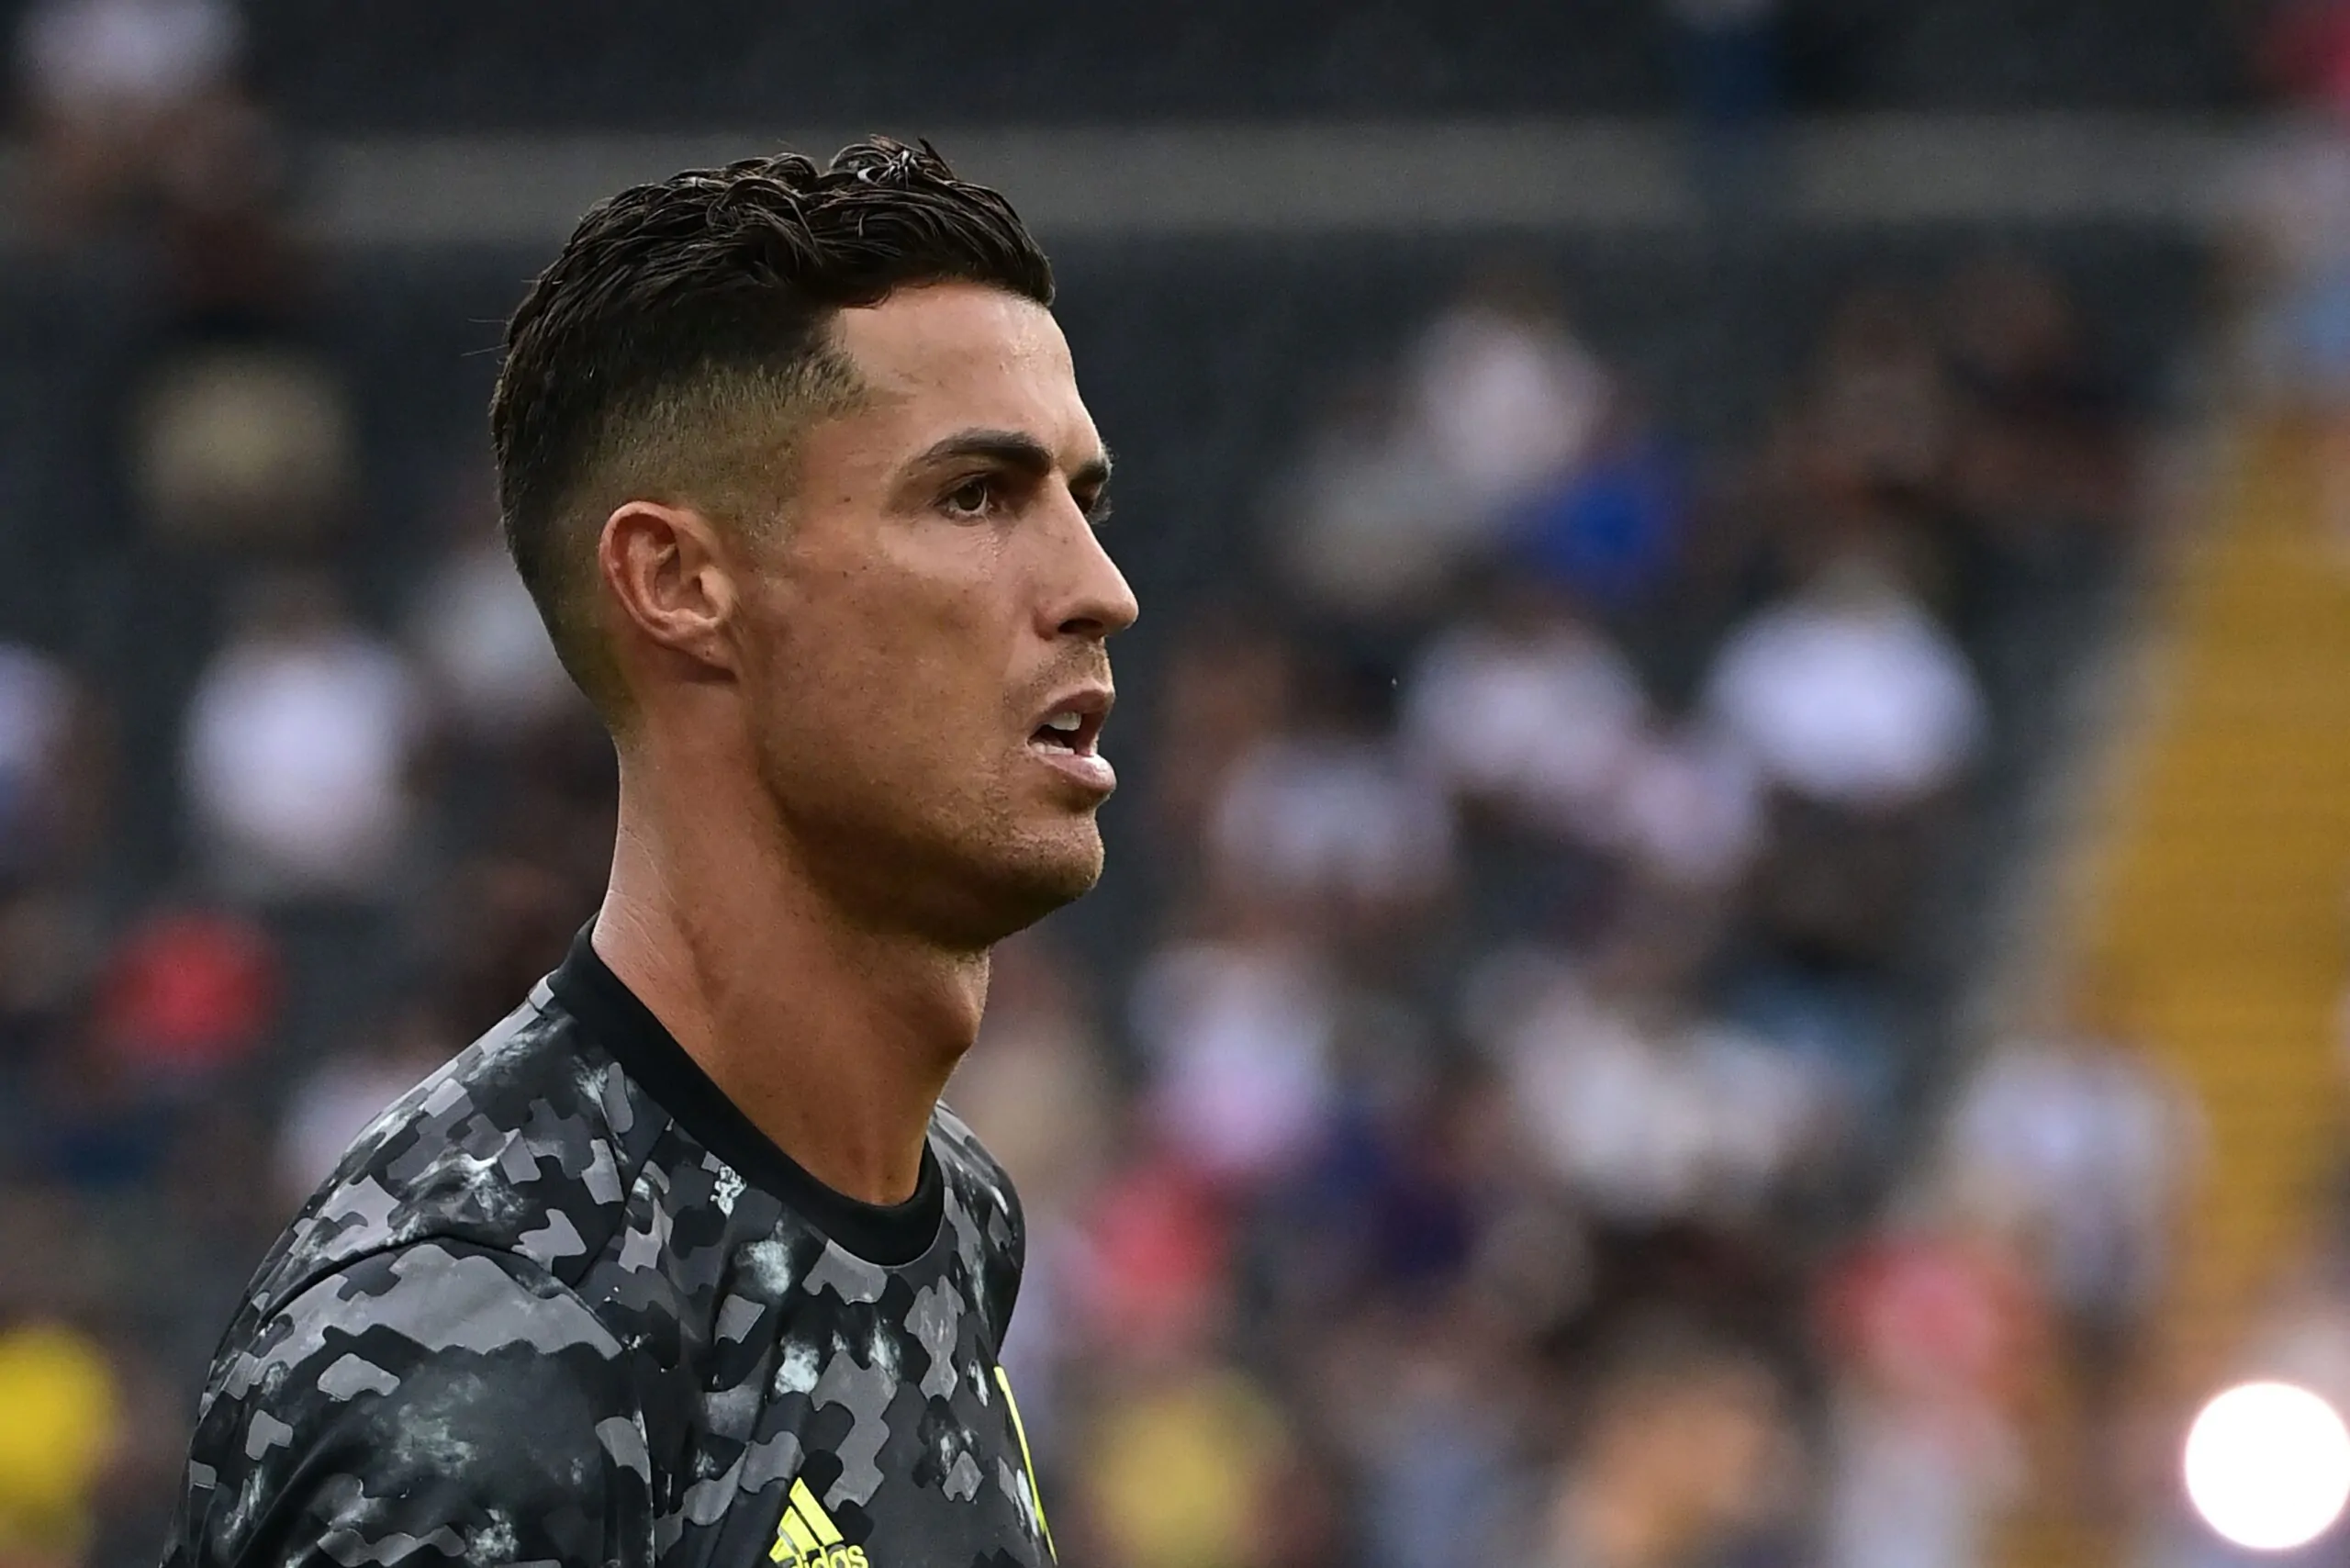 Inchiesta Juventus, svolta nell’indagine: trovata la carta mancante di Cristiano Ronaldo